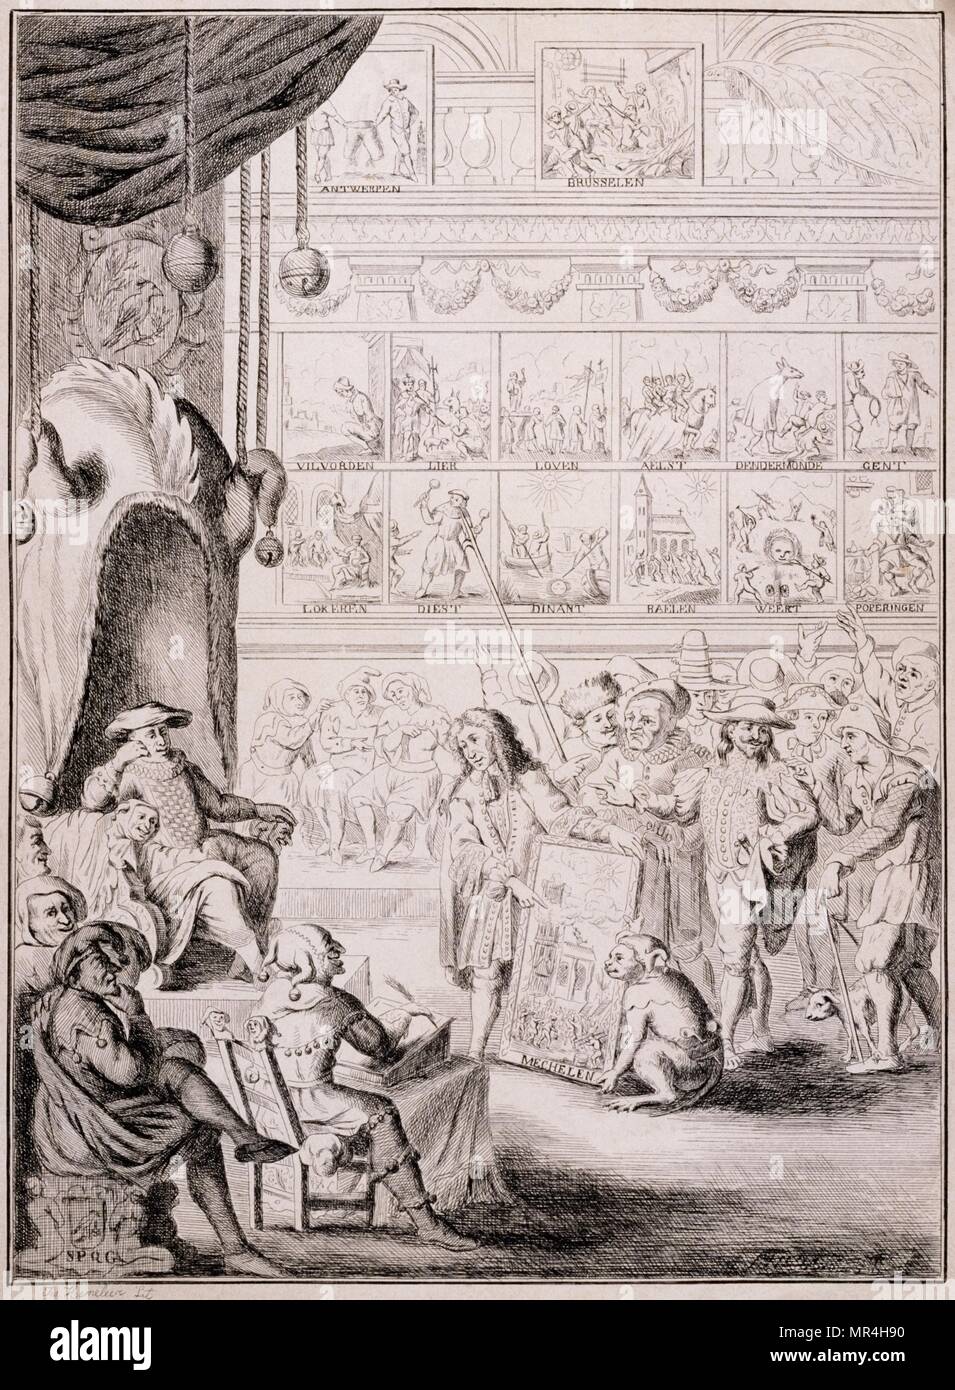 17e siècle belge (flamand) illustration représentant un artiste présentant ses œuvres une cour. Vers 1680 Banque D'Images